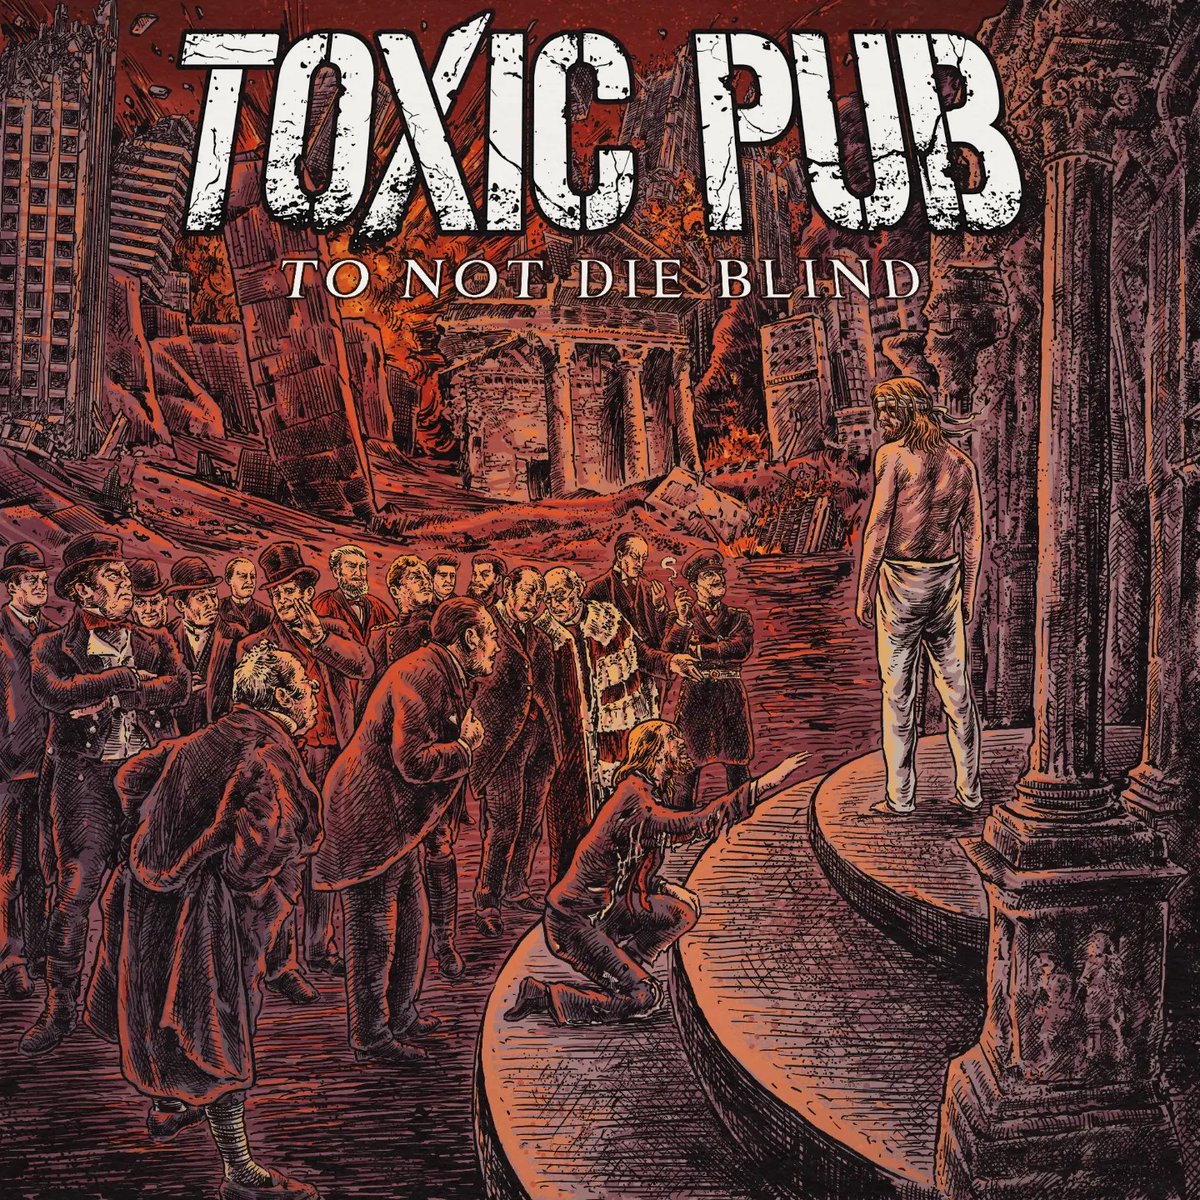 🎤 Toxic Pub
💿 To Not Die Blind  (1º Álbum)
⌛️ 34:52
🎸 Groove / Thrash Metal
🌍 Grecia 🇬🇷 / Atenas
📅 05-05-24 🆕
➡️ open.spotify.com/intl-es/album/…

📄 metal-archives.com/bands/Toxic_Pu…
🌐 facebook.com/toxic.pub.offi…
🌐 instagram.com/toxic.pub

#SepulMetal #SepulRecommended #HeardAndShared